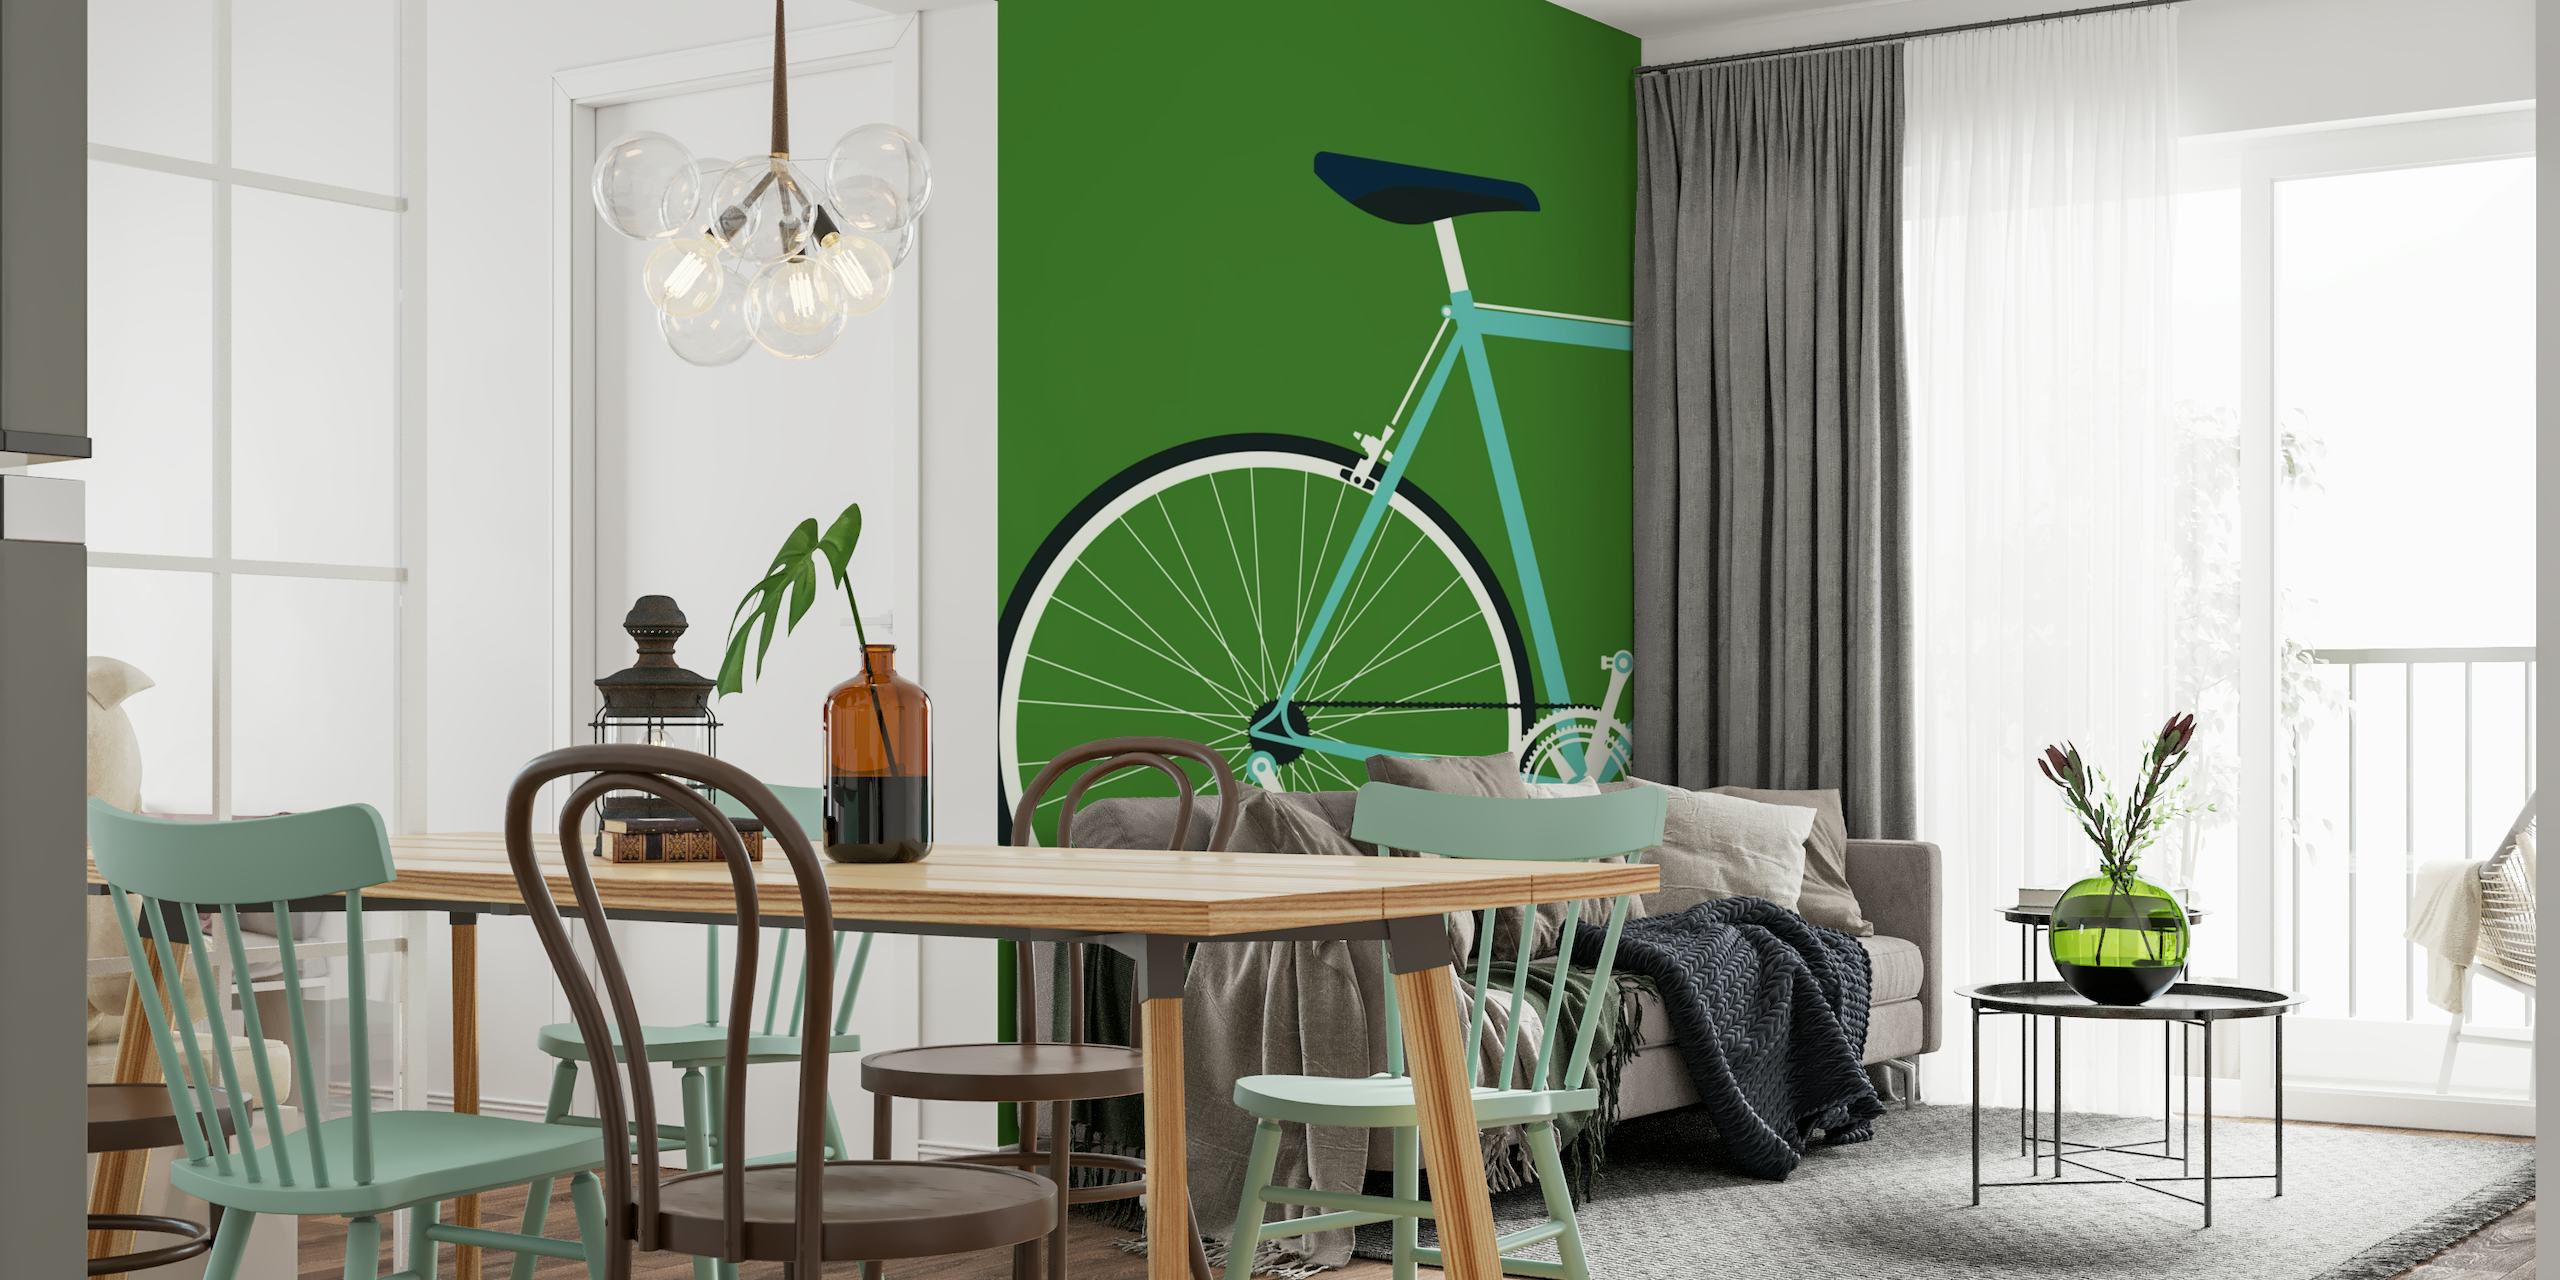 Bianchi-Wandbild „Rückseite“ mit einer stilisierten Fahrradsilhouette auf grünem Hintergrund